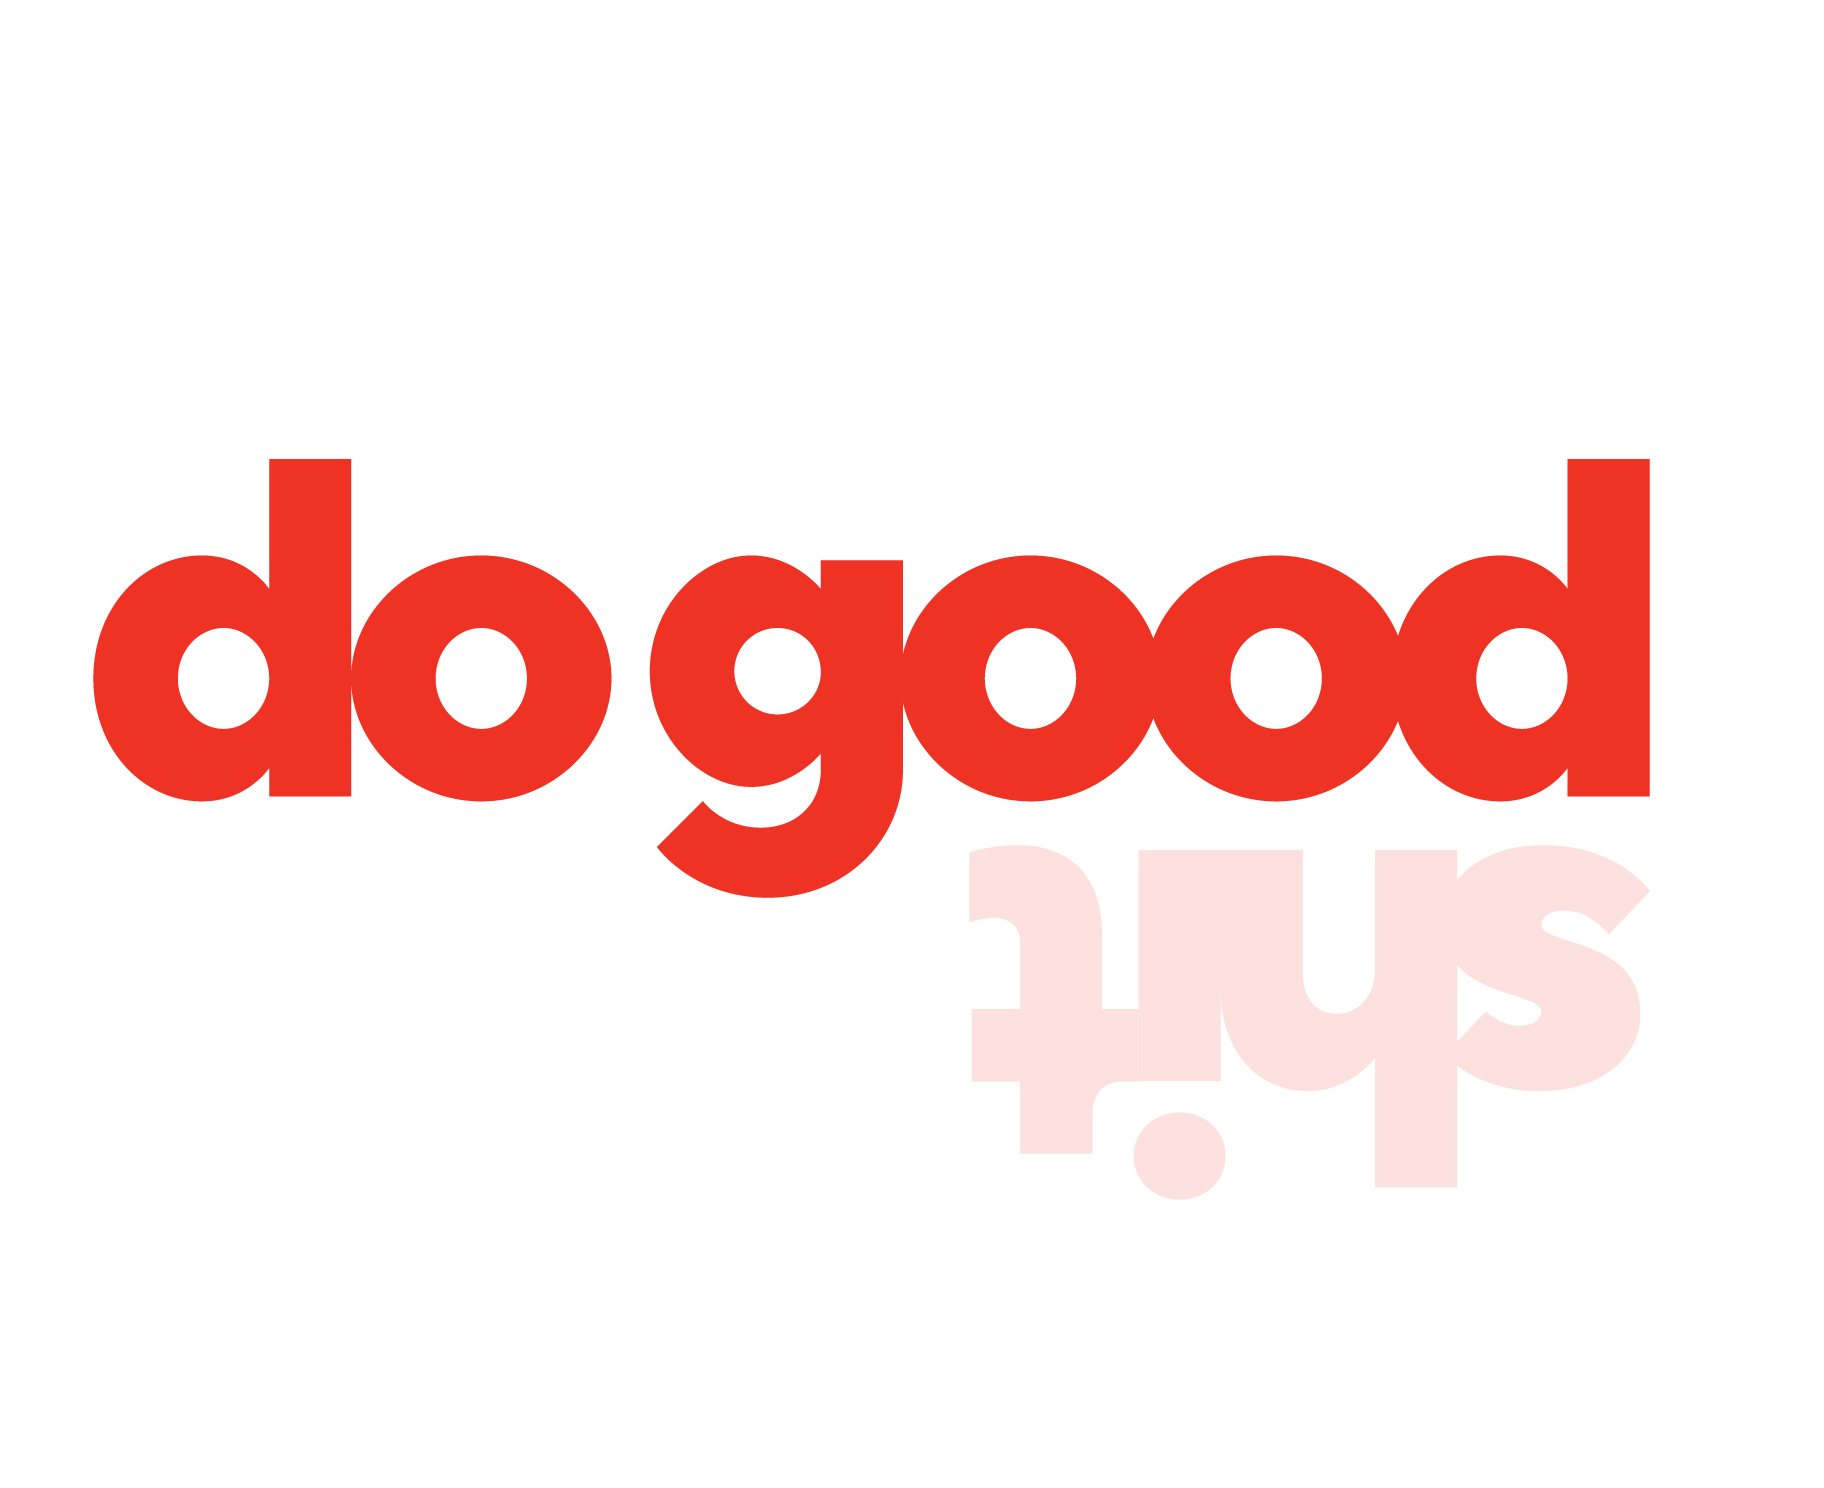 Do Good Sh*t